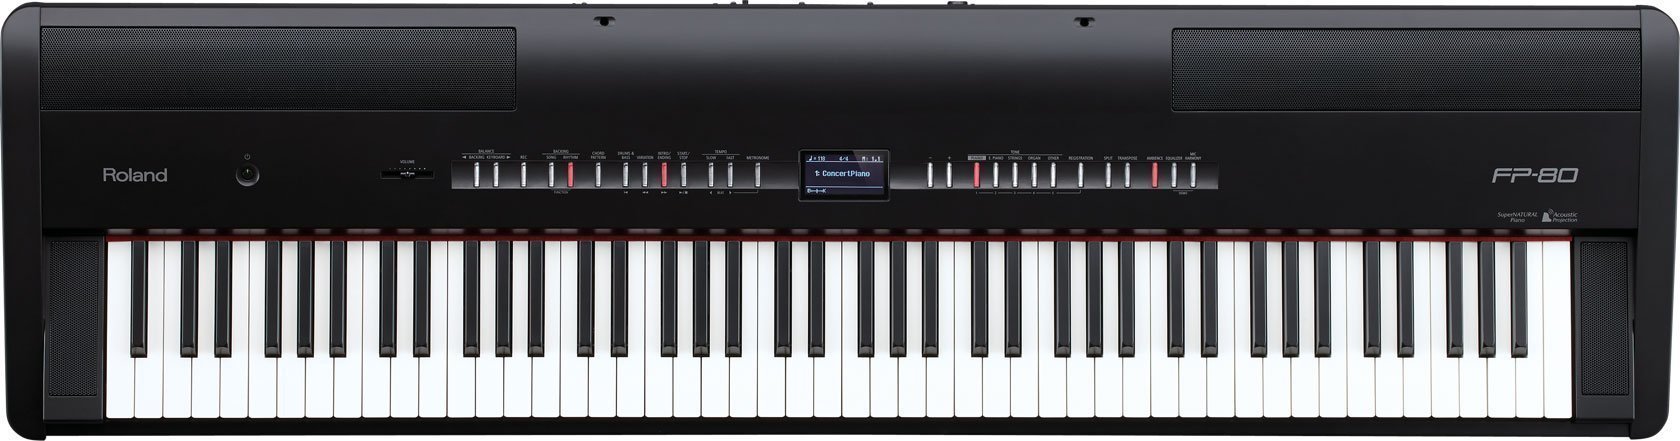 Piano de escenario digital Roland FP 80 Black Portable Digital Piano